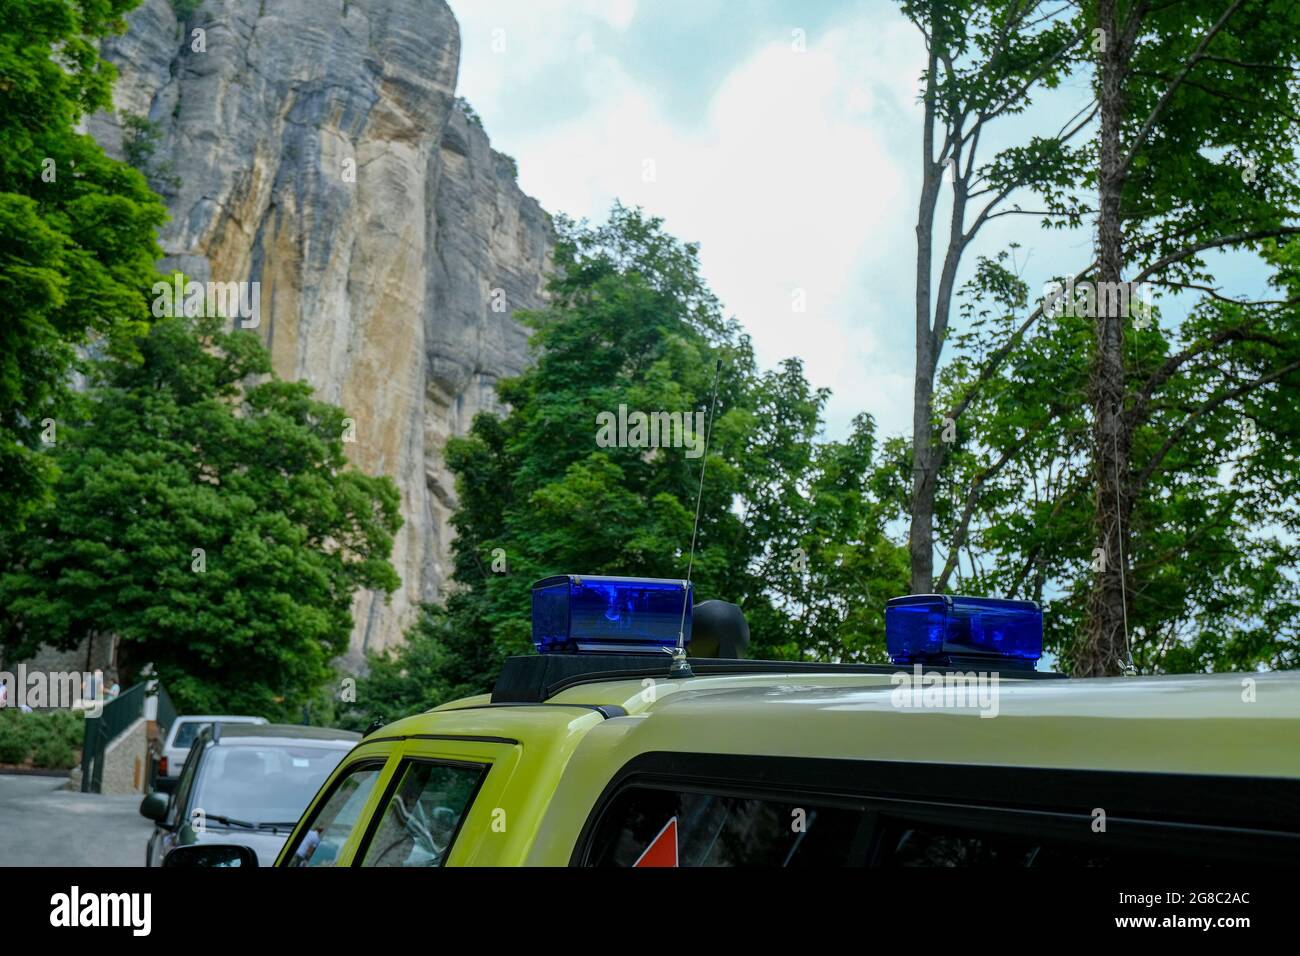 Le luci di emergenza si chiudono sull'auto ambulanza sulla strada in montagna. Salvare le persone vivono in condizioni estreme Foto Stock